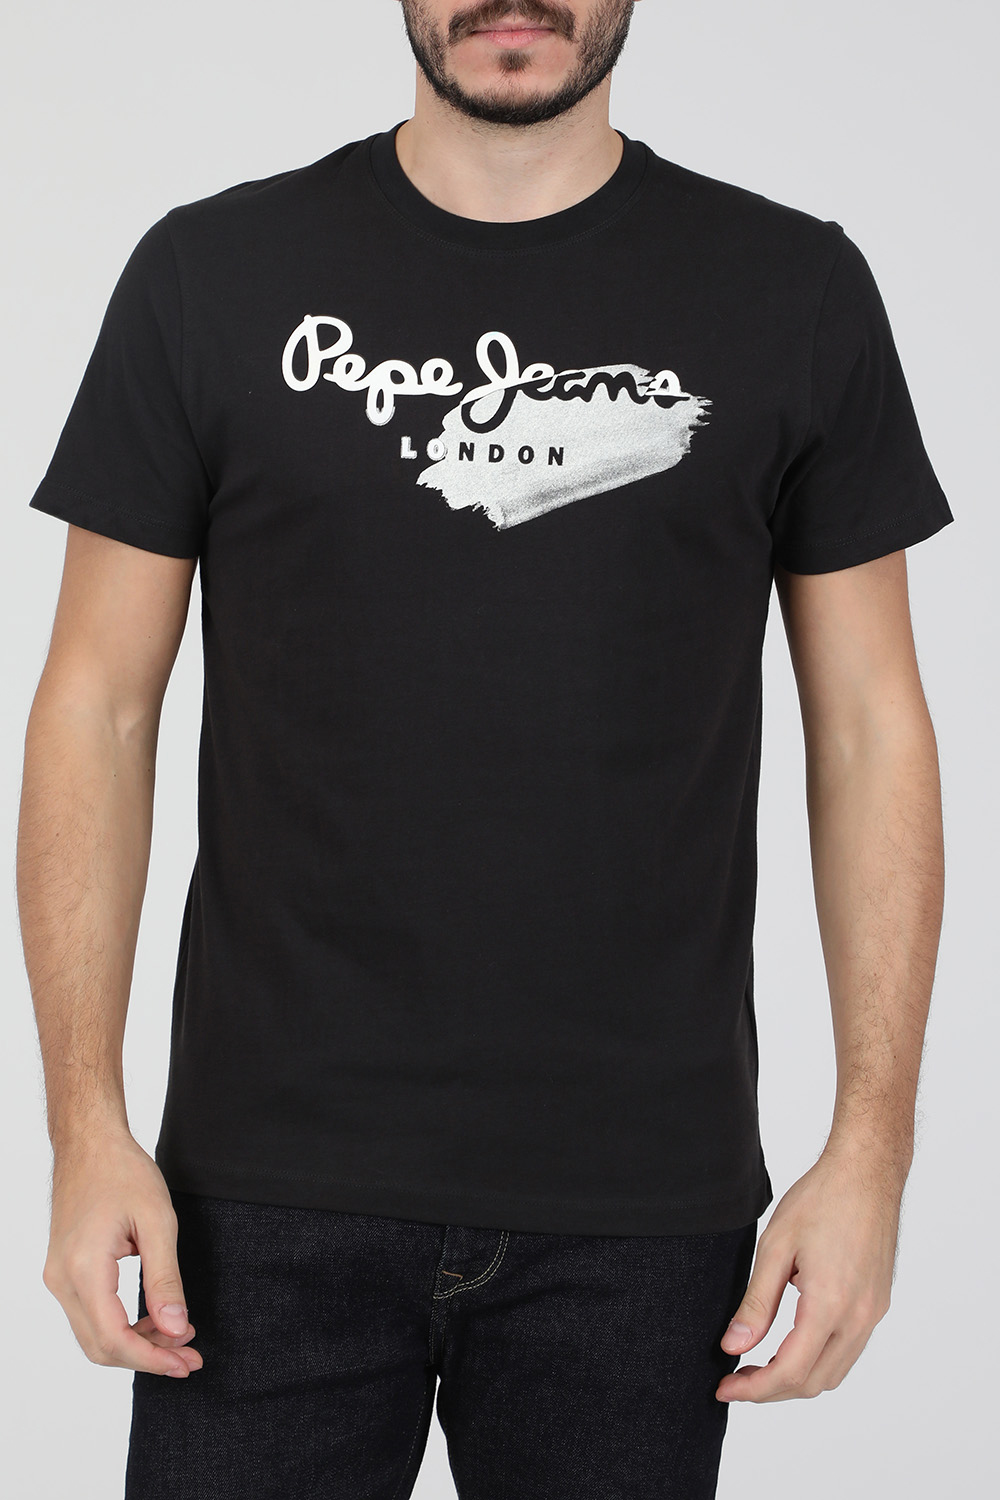 Ανδρικά/Ρούχα/Μπλούζες/Κοντομάνικες PEPE JEANS - Ανδρική κοντομάνικη μπλούζα PEPE JEANS TERRY ανθρακί